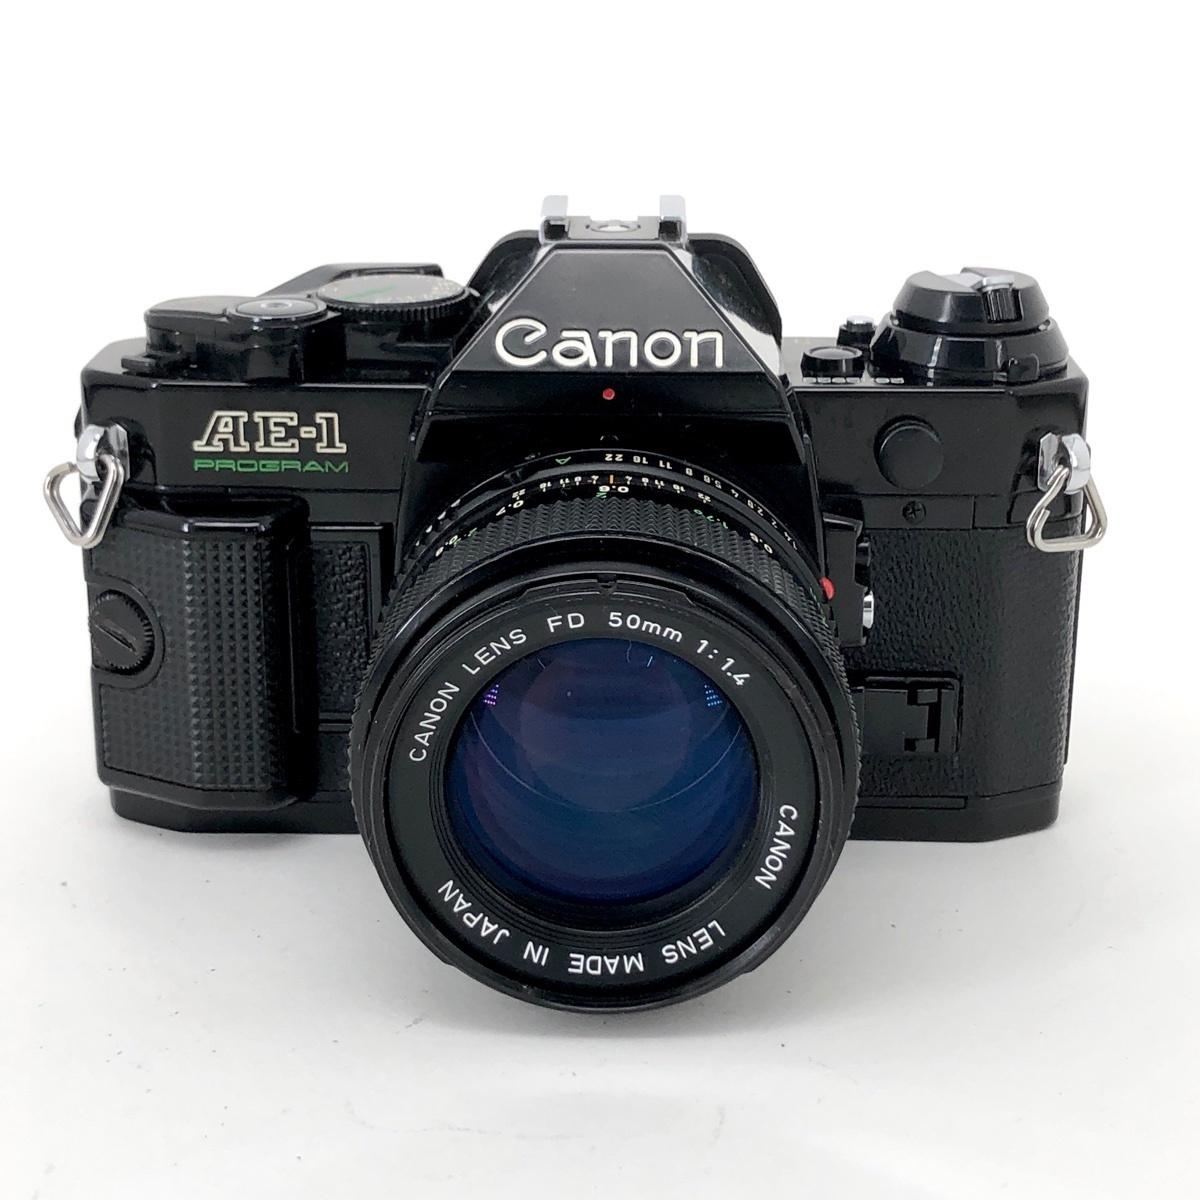 キヤノン Canon AE-1 PROGRAM NEW FD 50mm F1.4 フィルム マニュアルフォーカス 一眼レフカメラ 【】 